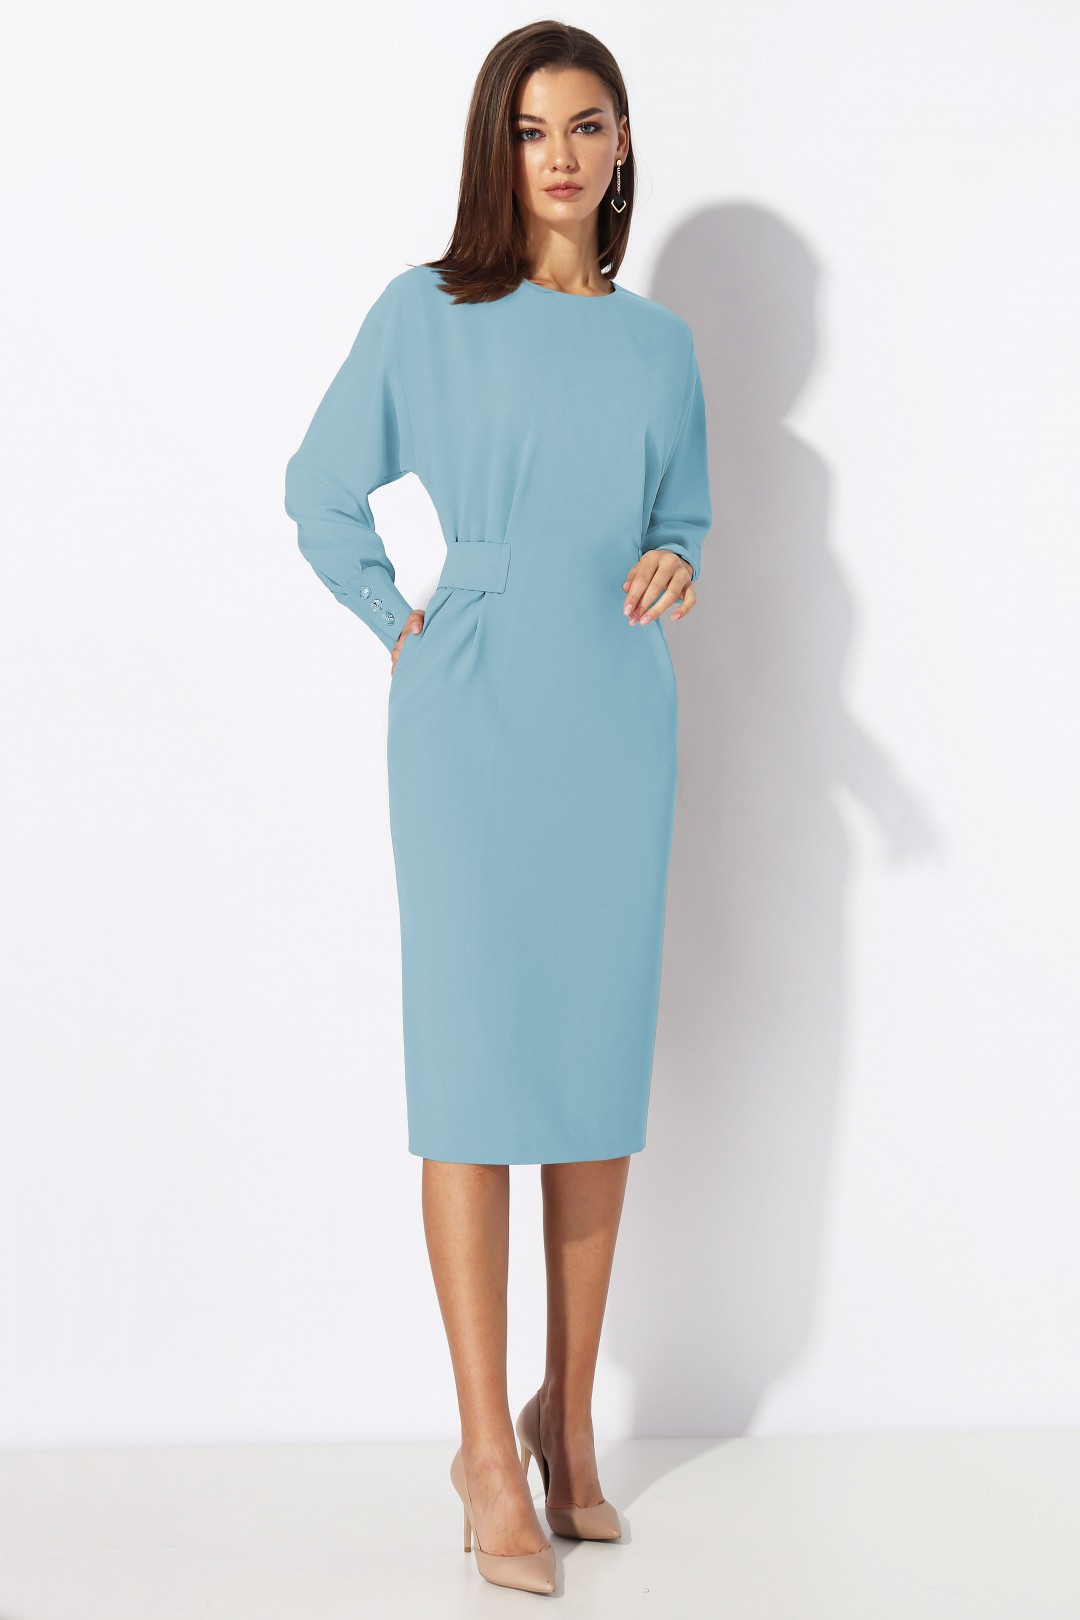 Платье МиА-Мода 1197-3 голубой